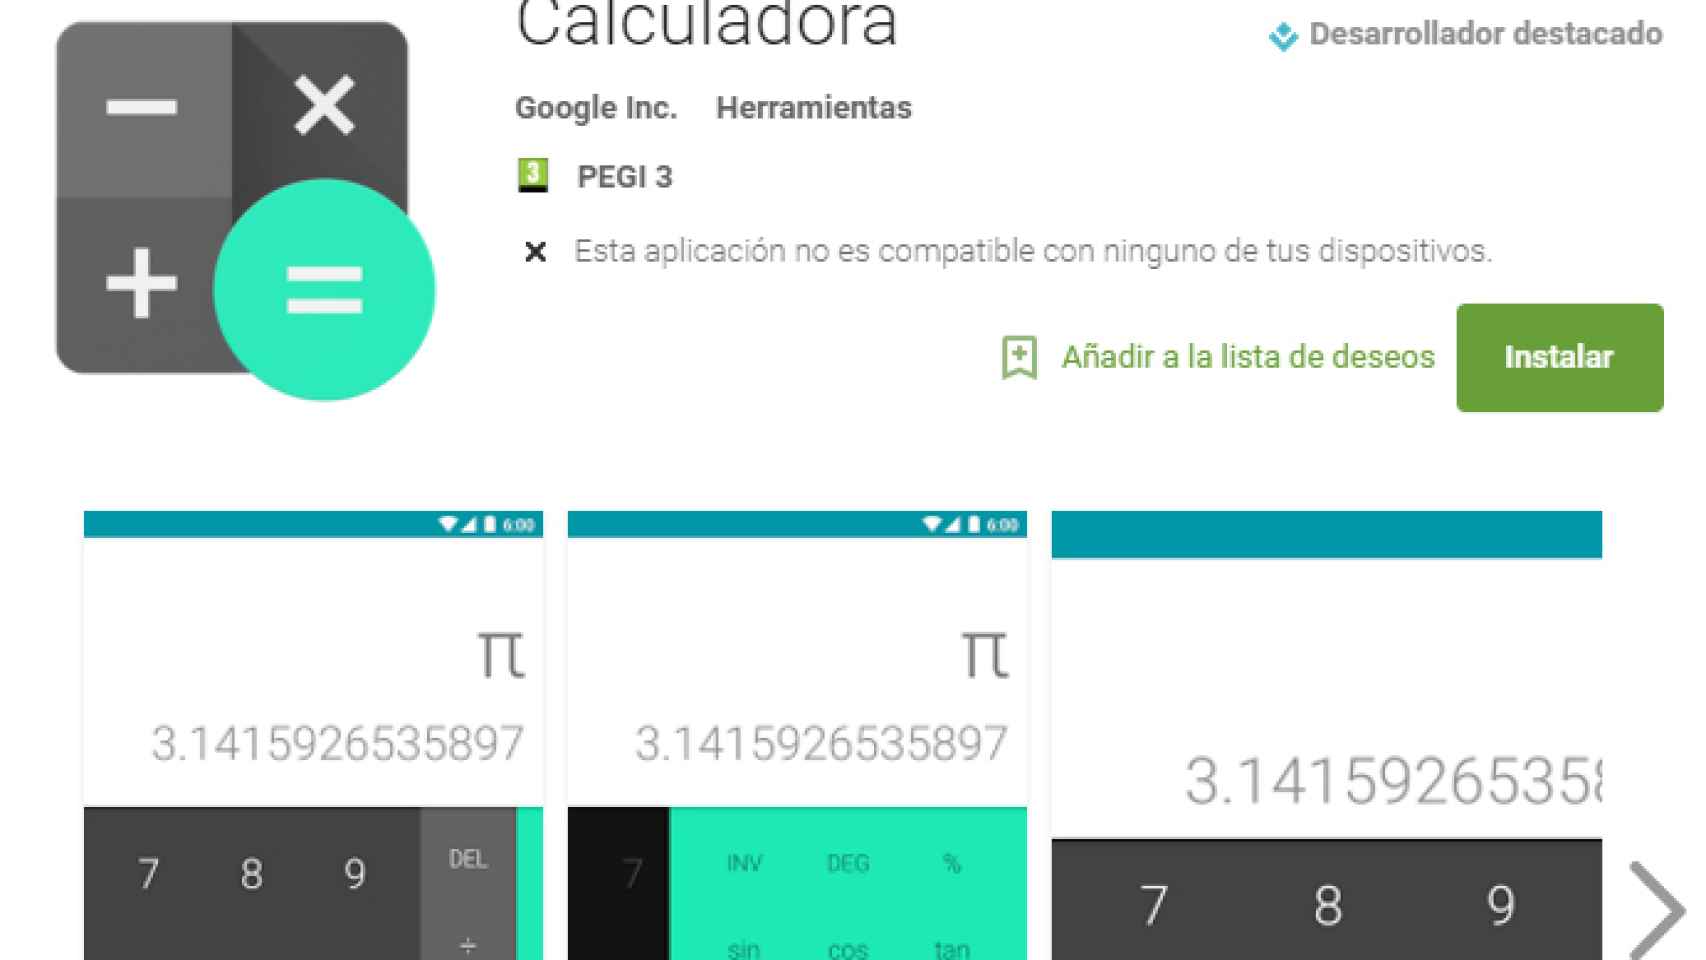 Ya es posible descargar la Calculadora de Android en Google Play